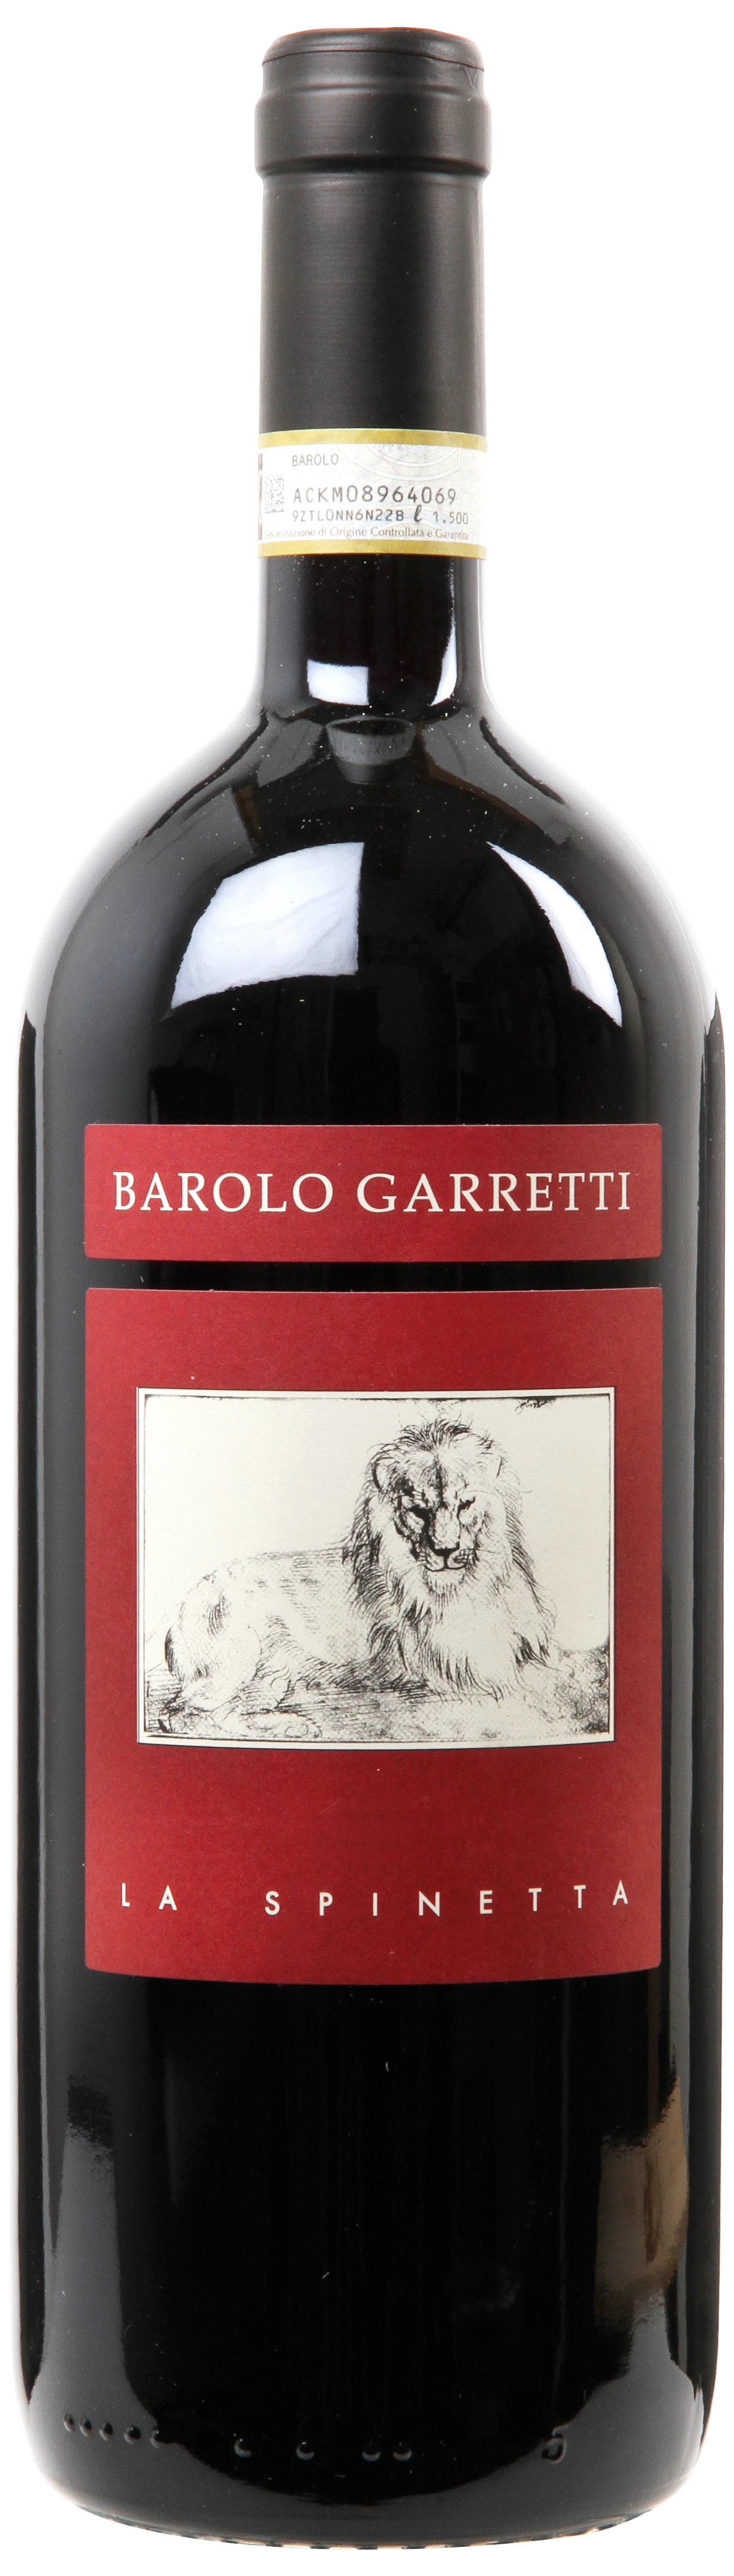 Løgismose Rødvin La Spinetta Barolo Garretti - Magnum 1,5l 2016 - 216621